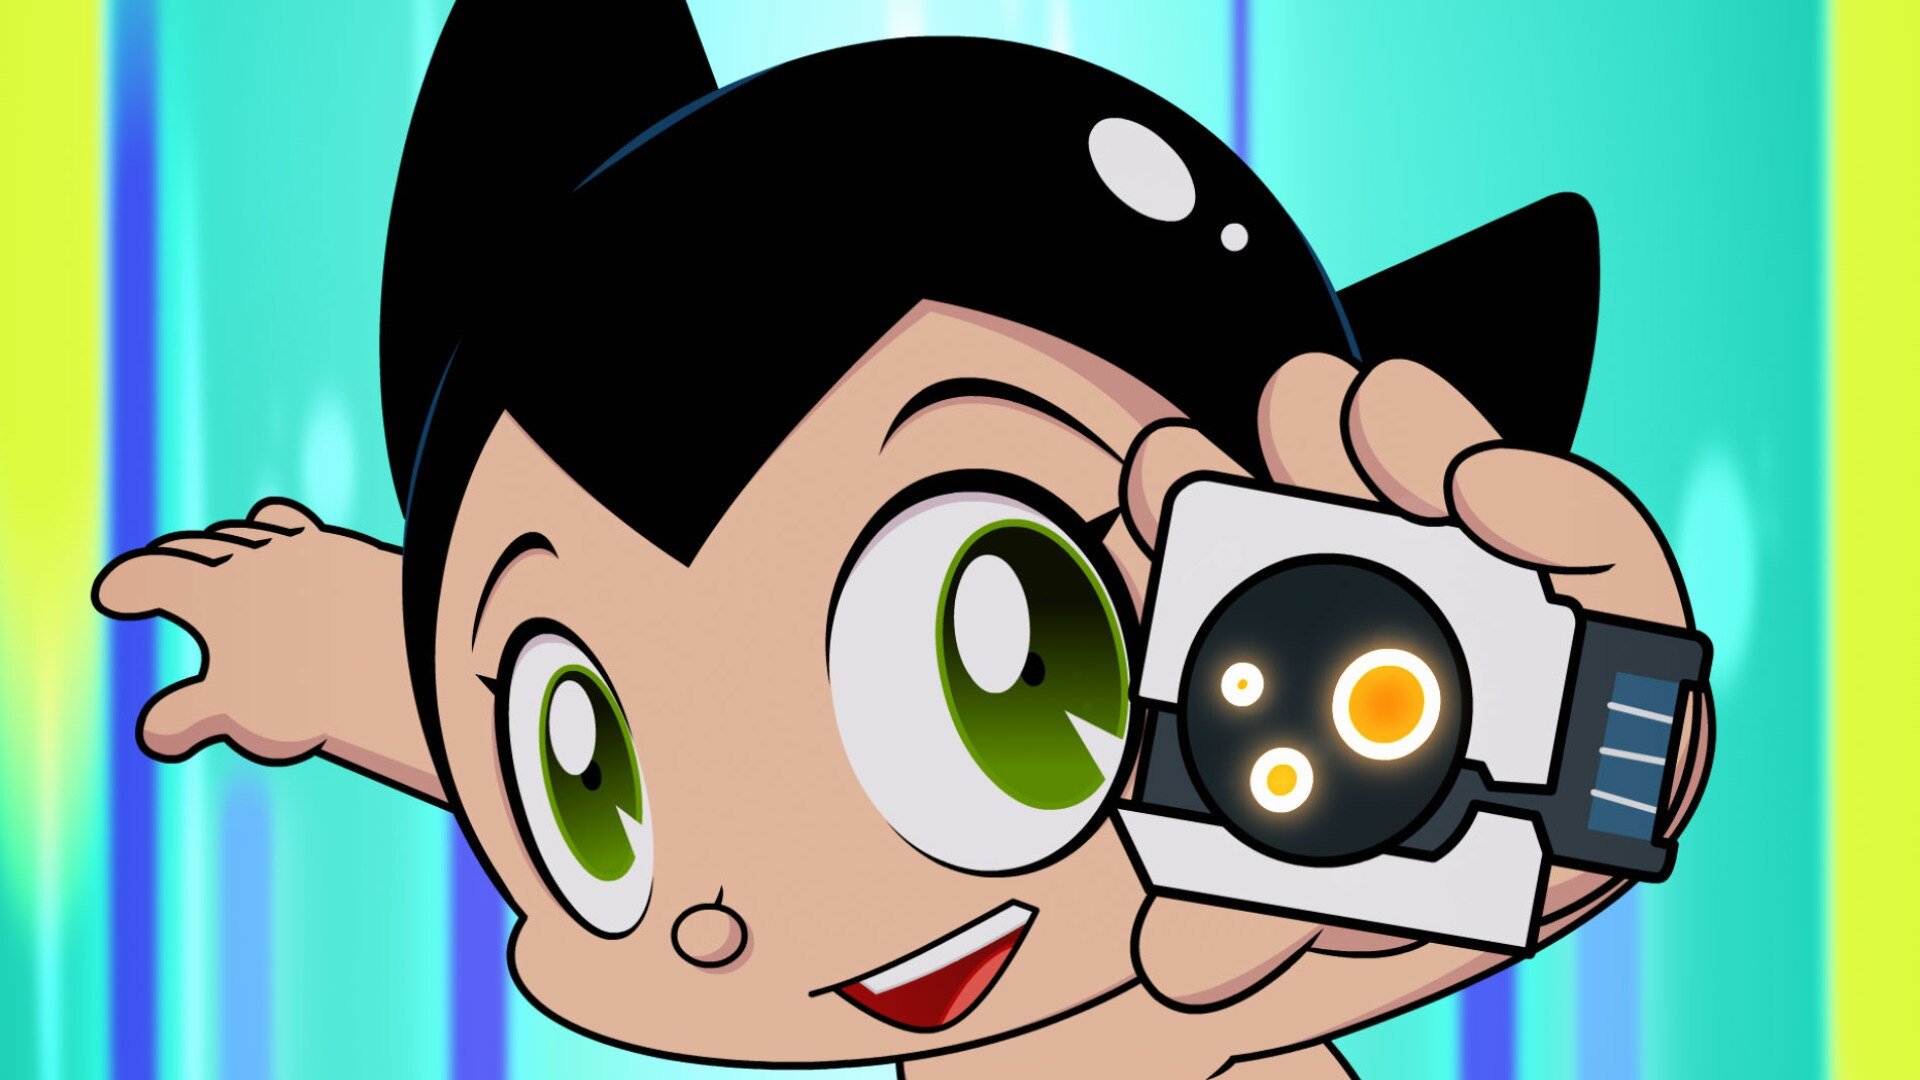 Watch Go Astro Boy Go Season 1 Episode 3 Online Stream Full Episodes